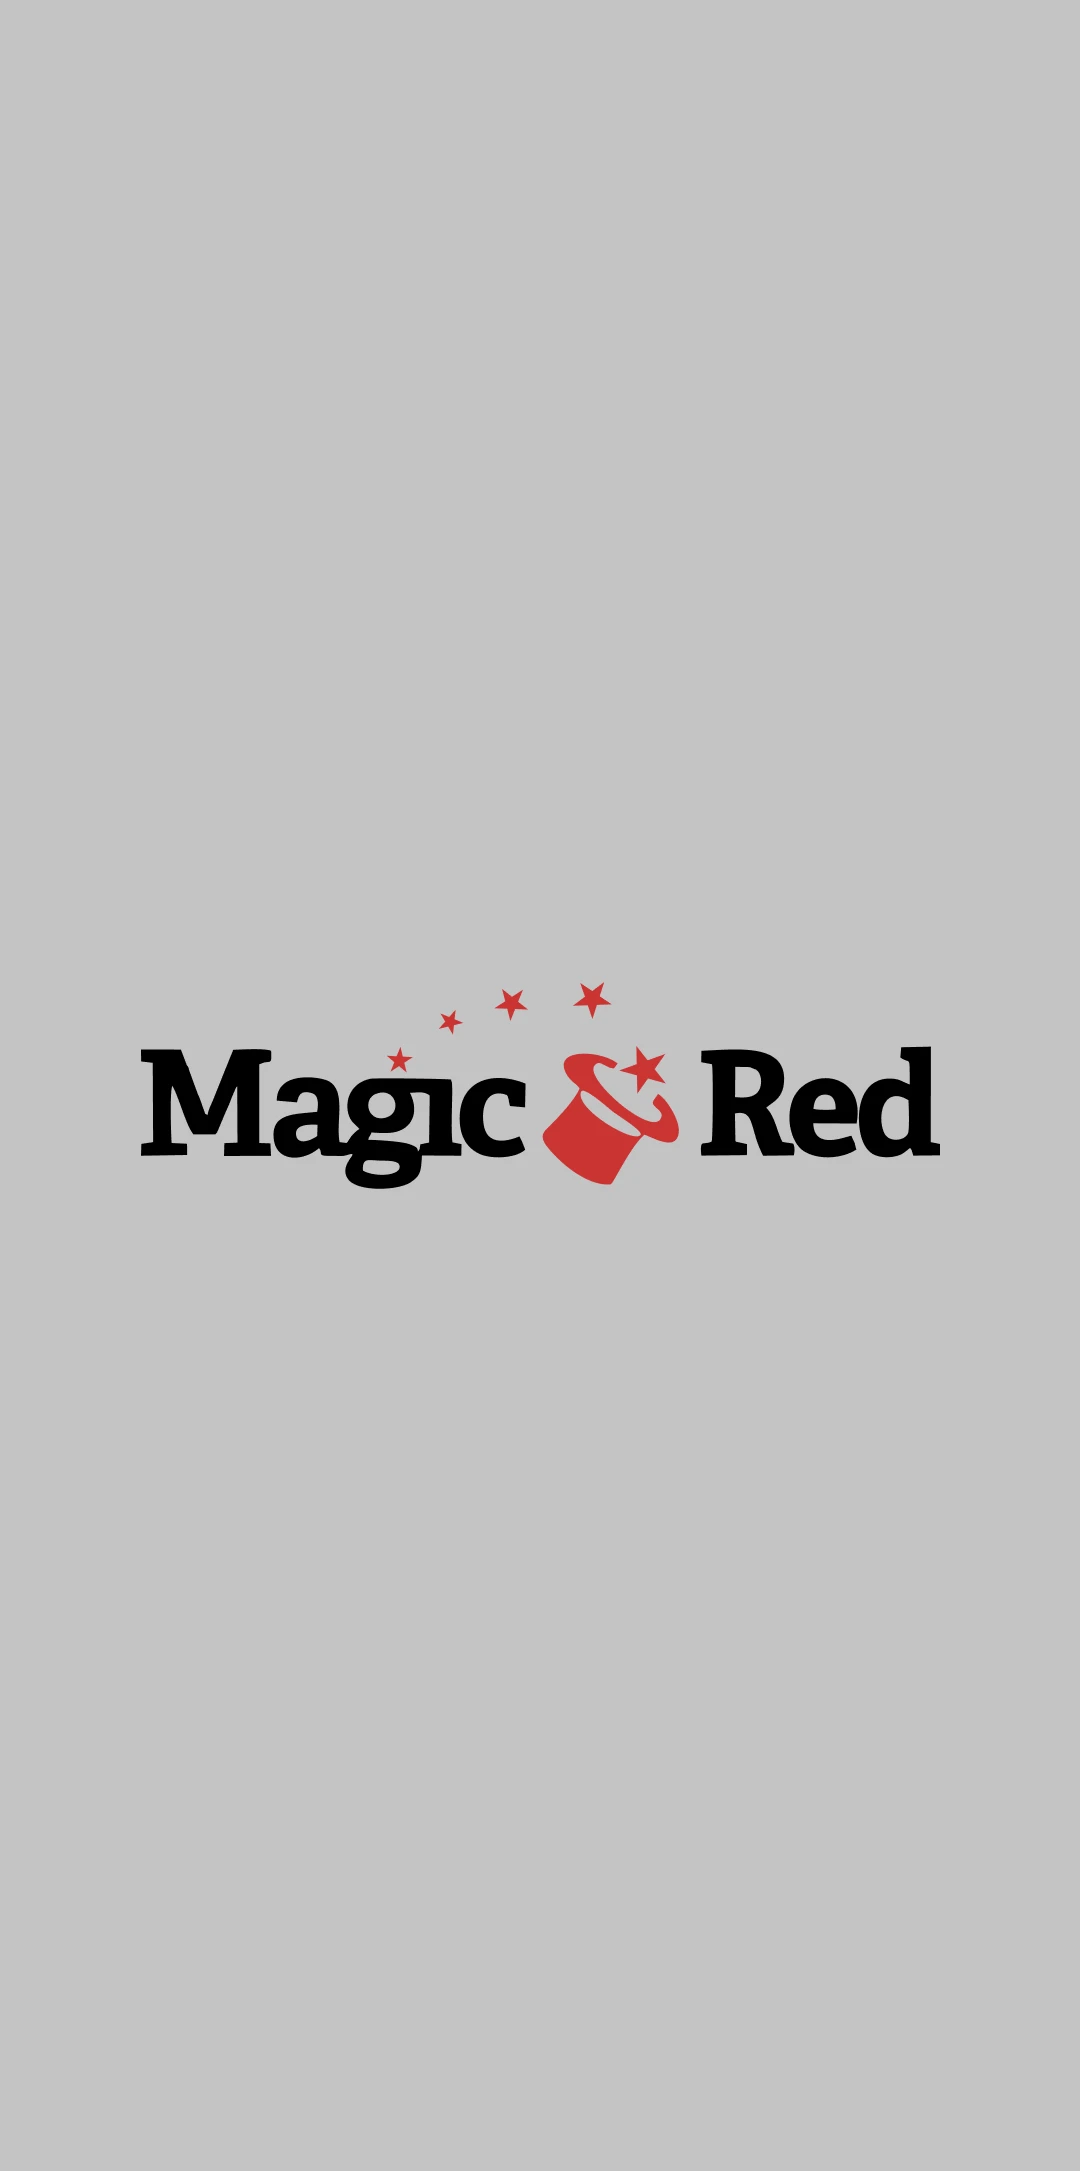 Depois de fazer login, você pode começar a usar a versão da Web móvel do Magic Red para iOS.